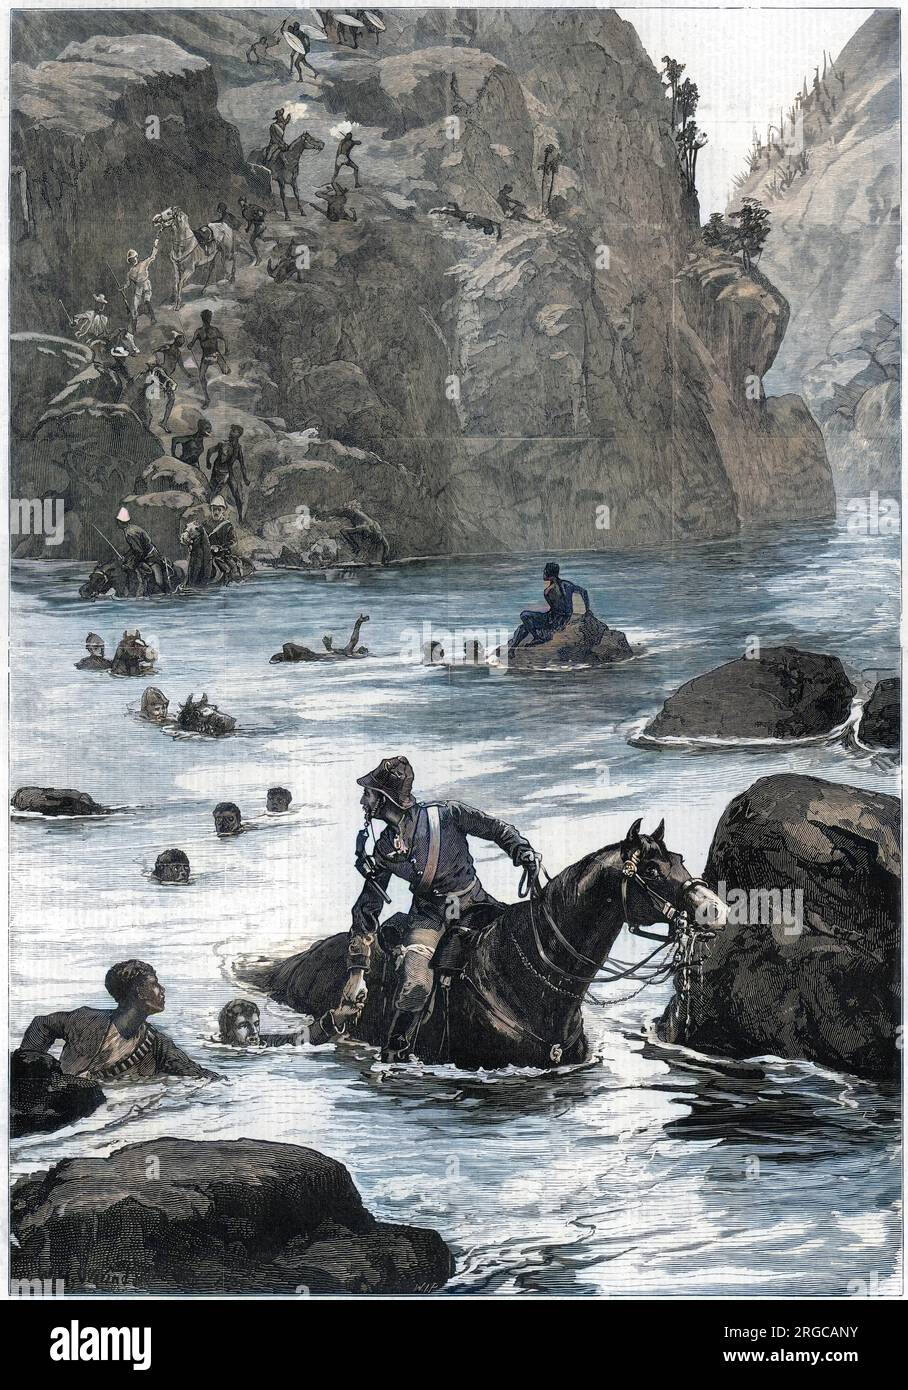 La guerre de Zulu : retrait des forces britanniques de leur défaite à Isandlwana, en face de la rivière Buffalo ; les soldats croissent avec des chevaux, d'autres hommes nagent. Banque D'Images